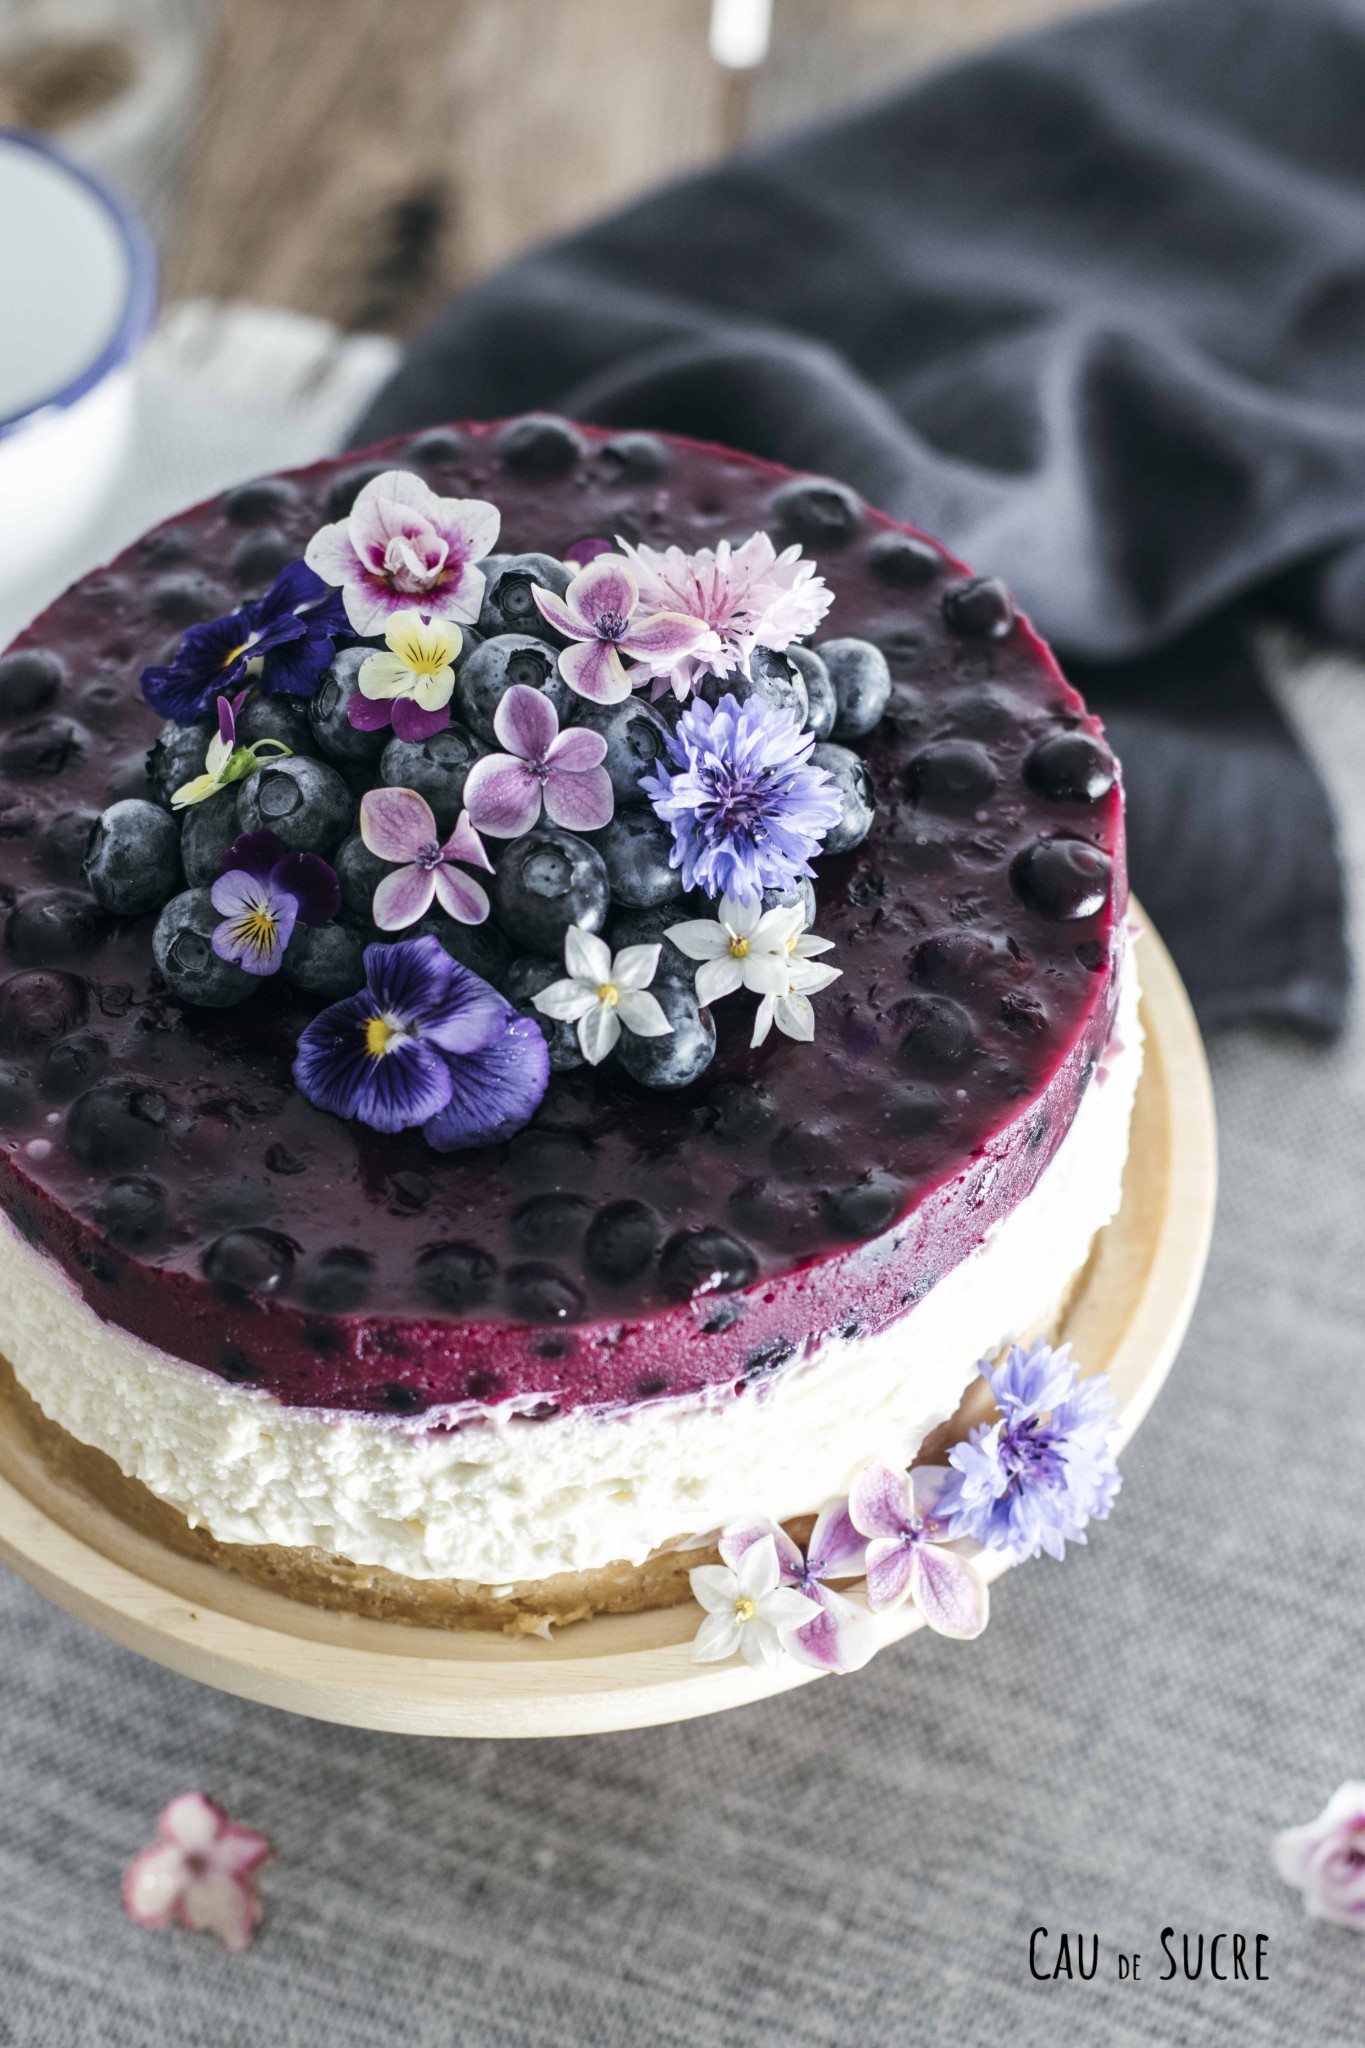 276 calories for the whole cheesecake 😋 #cheesecake #lemon #blueberry... |  TikTok